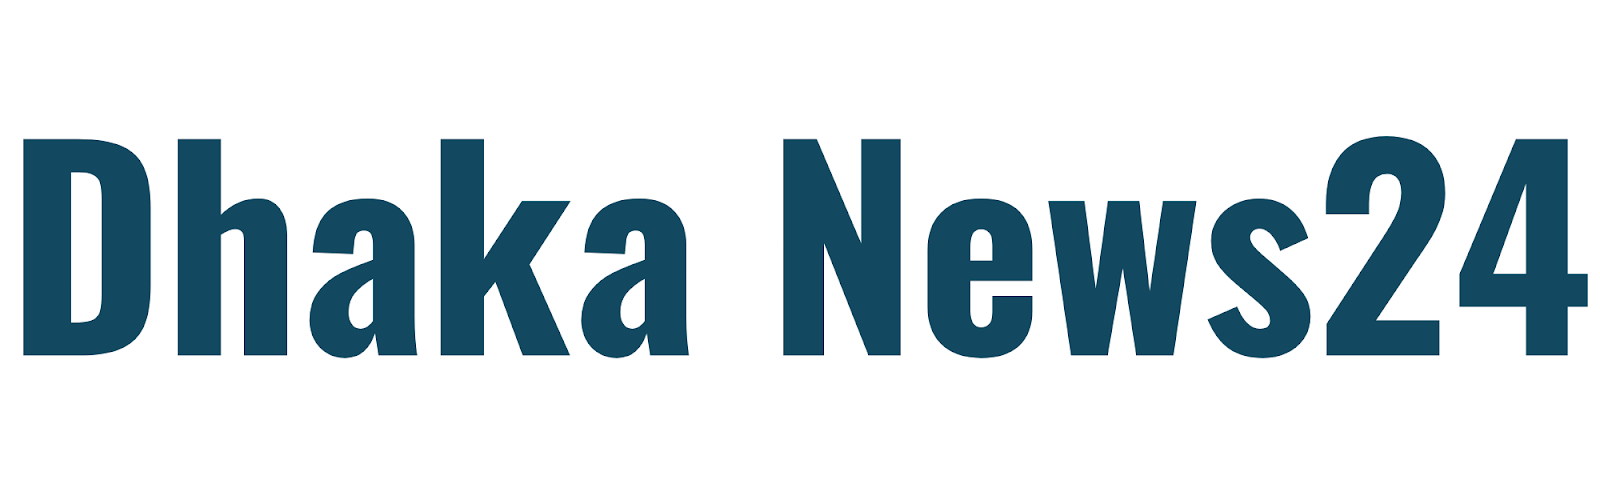 dhaka news 24